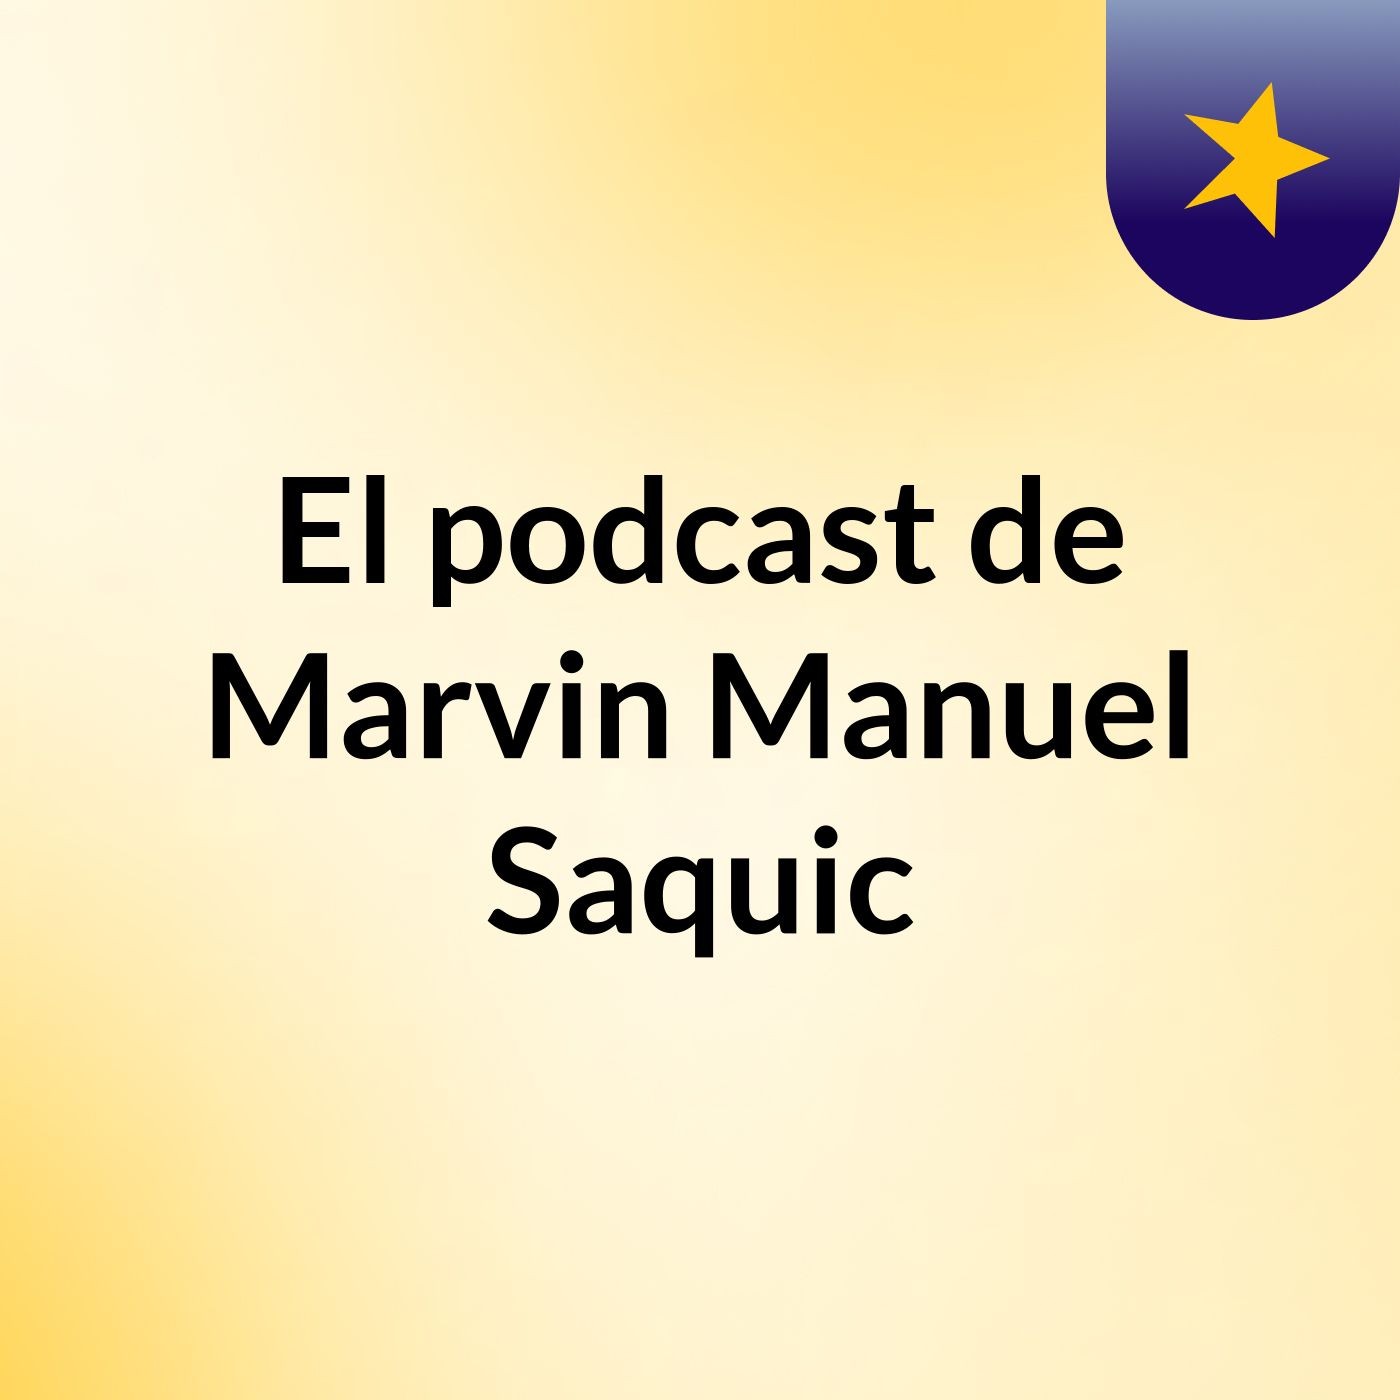 El podcast de Marvin Manuel Saquic